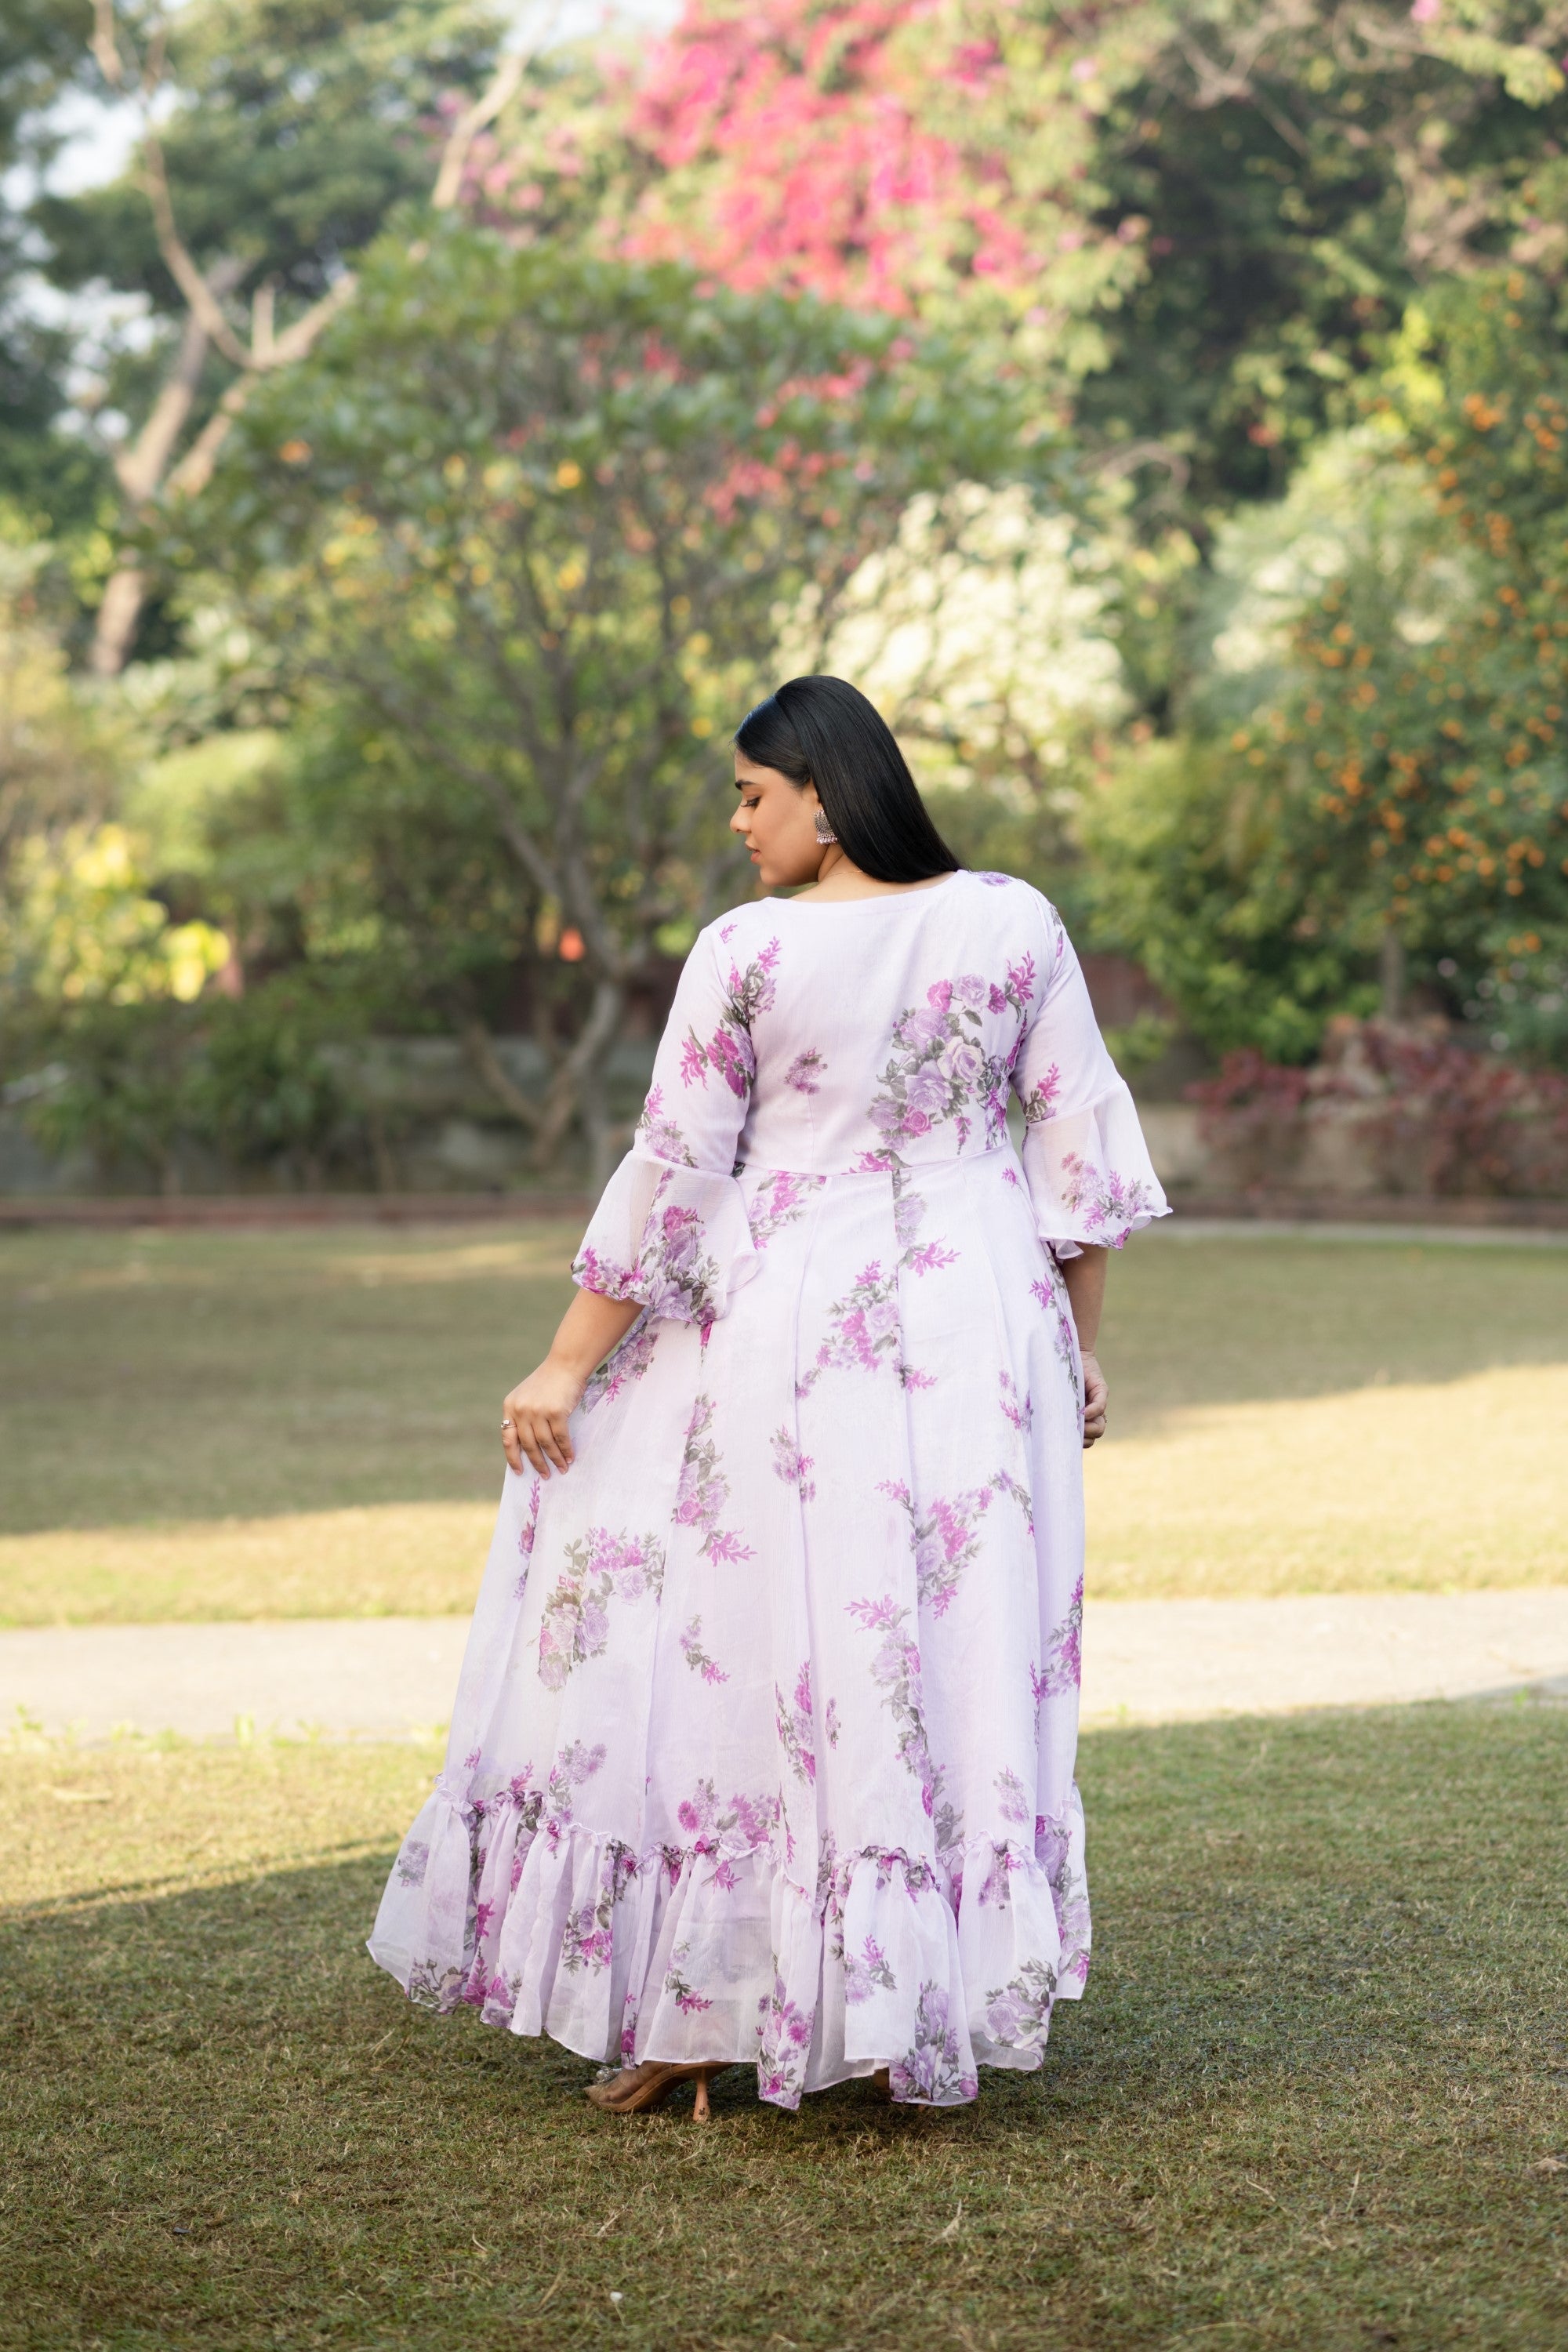 Women's Lavender Maxi Dress Floral - Saras The Label- 1Pc Set